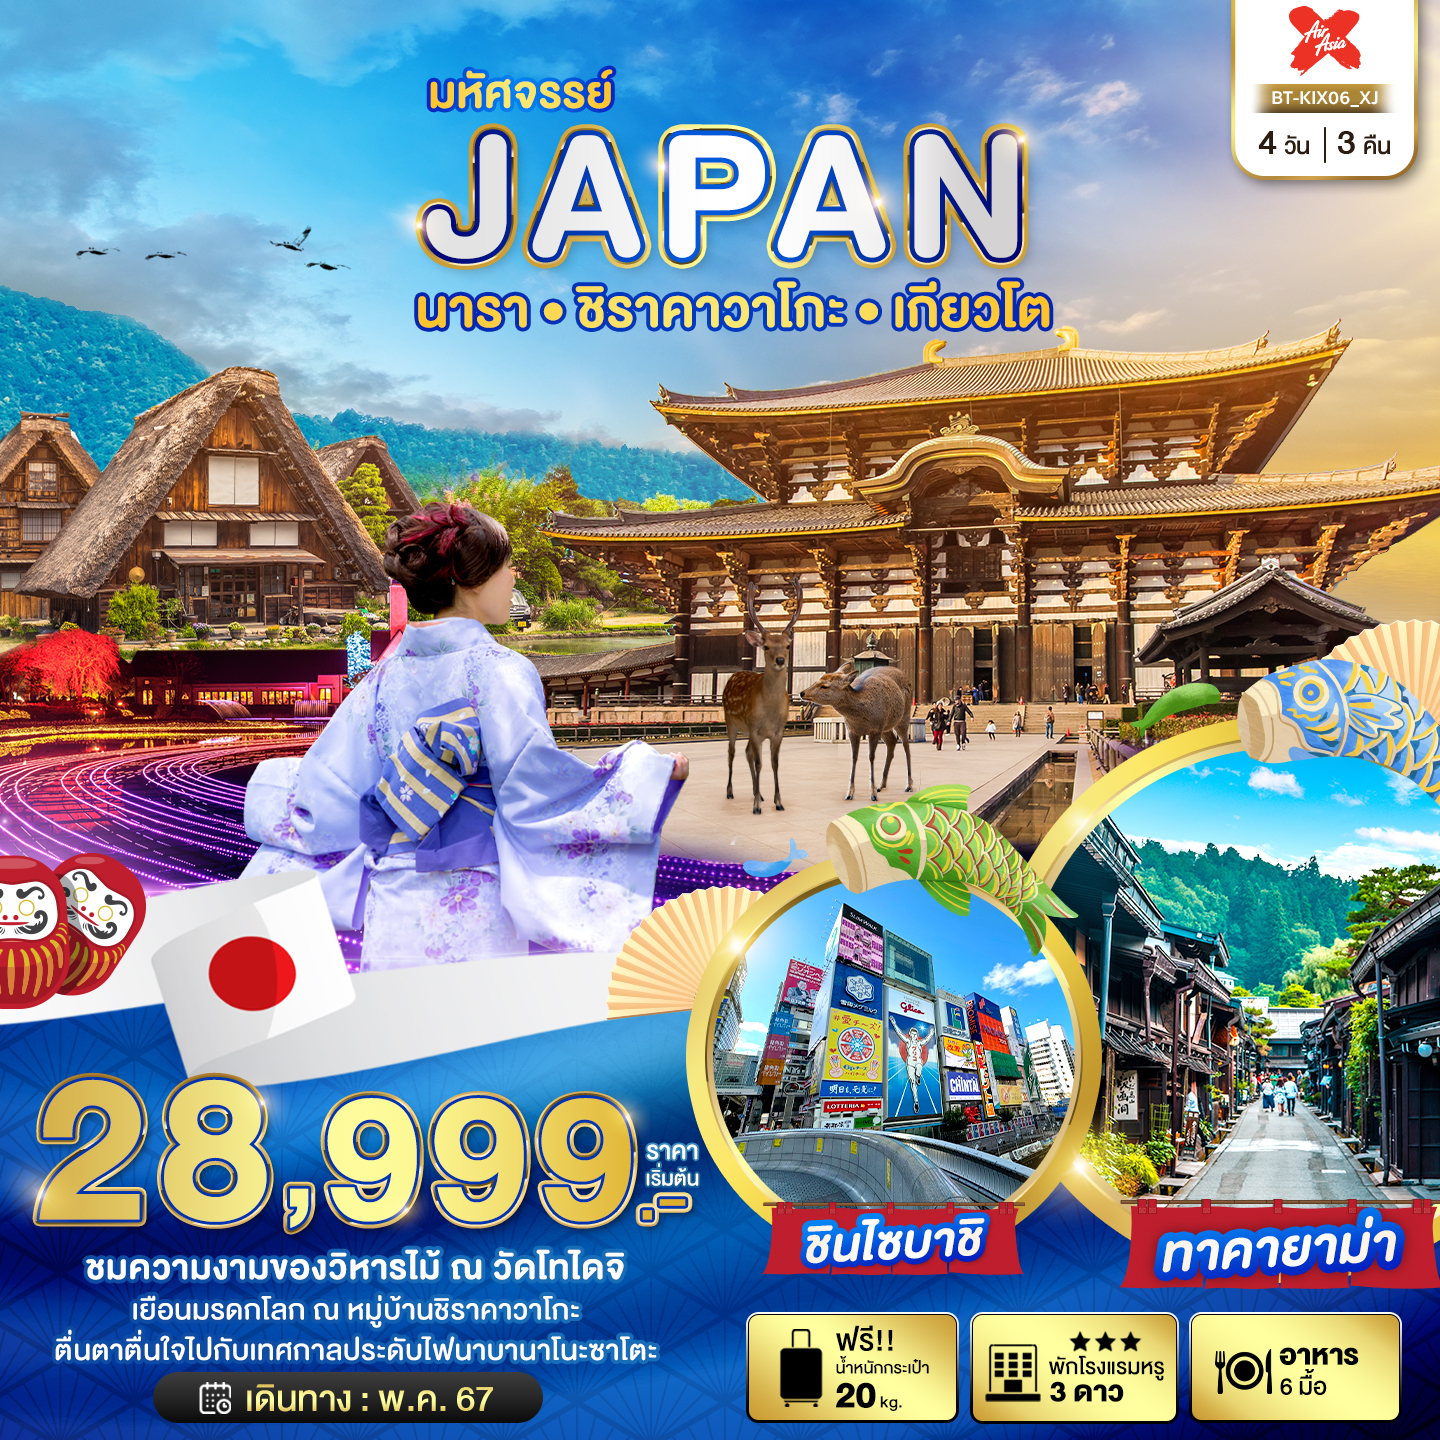 JAPAN ญี่ปุ่น นารา ชิราคาวาโกะ เกียวโต 4 วัน 3 คืน เดินทาง พฤษภาคม 67 เริ่มต้น 28,999.- Air Asia X (XJ)